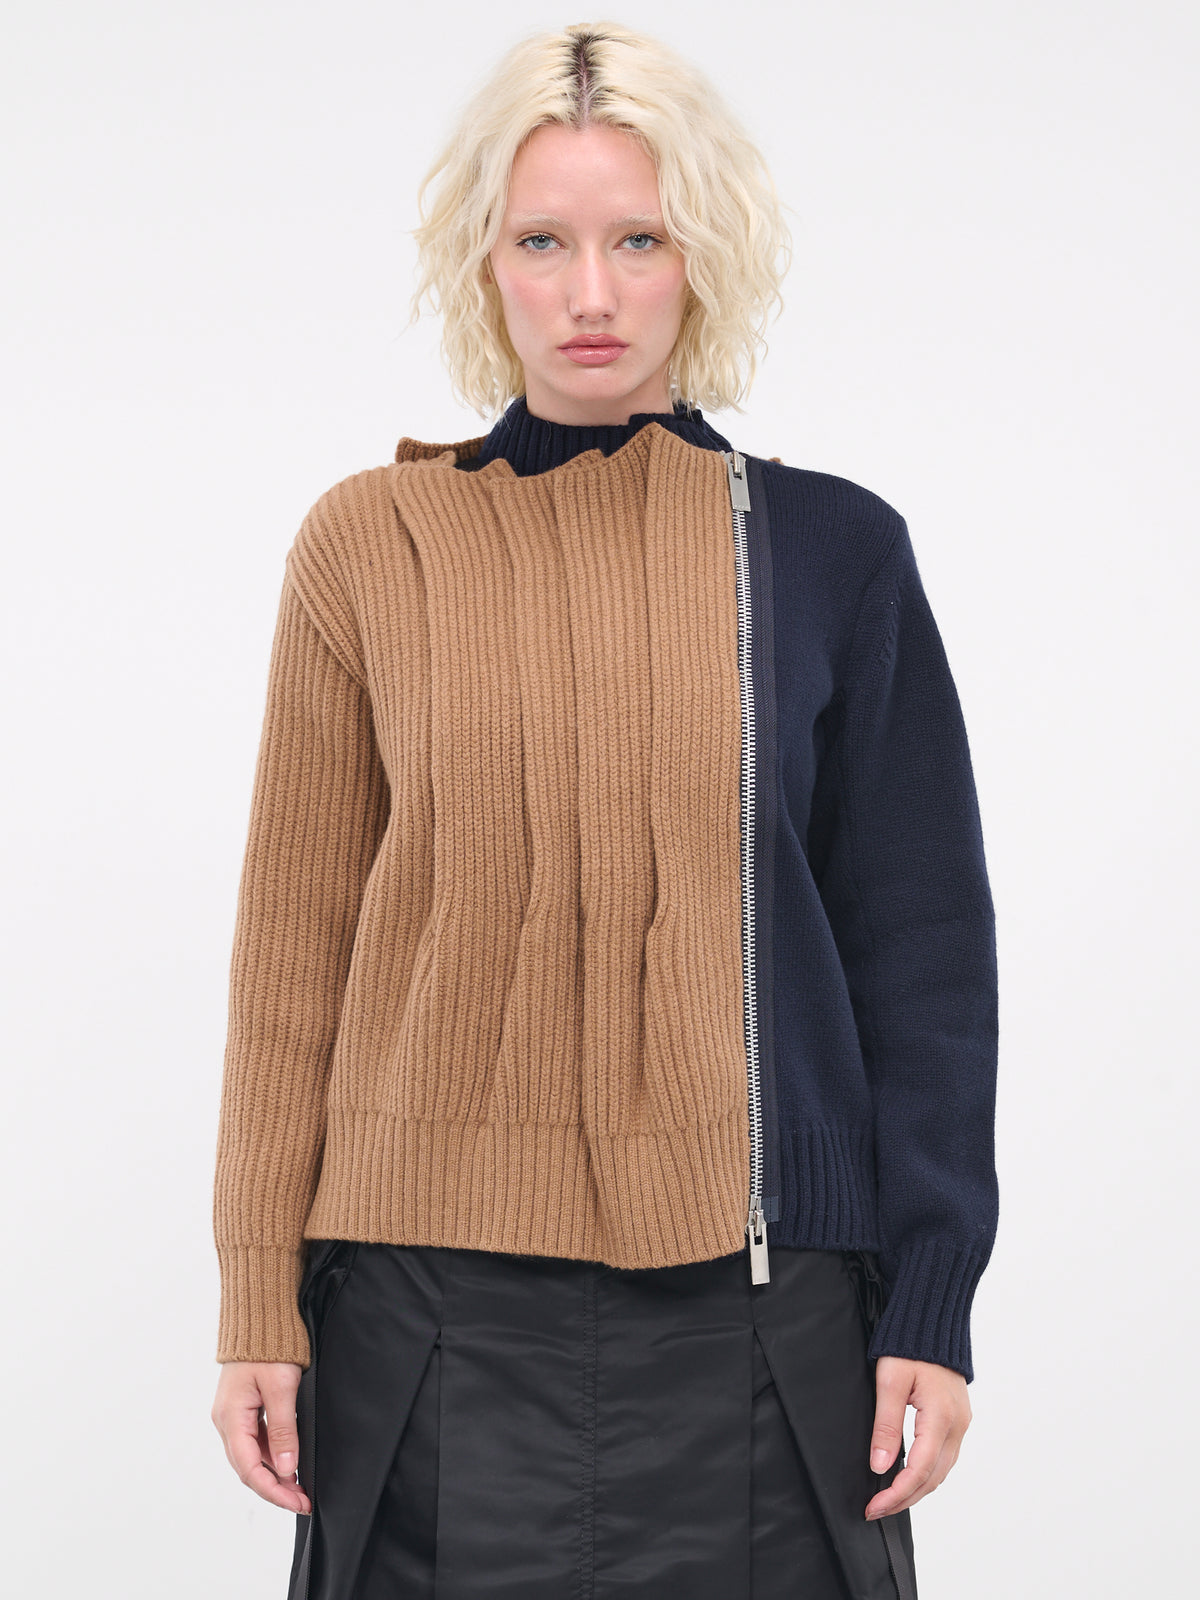 Wool Knit Blouson (06959-662-BEIGE-NAVY)